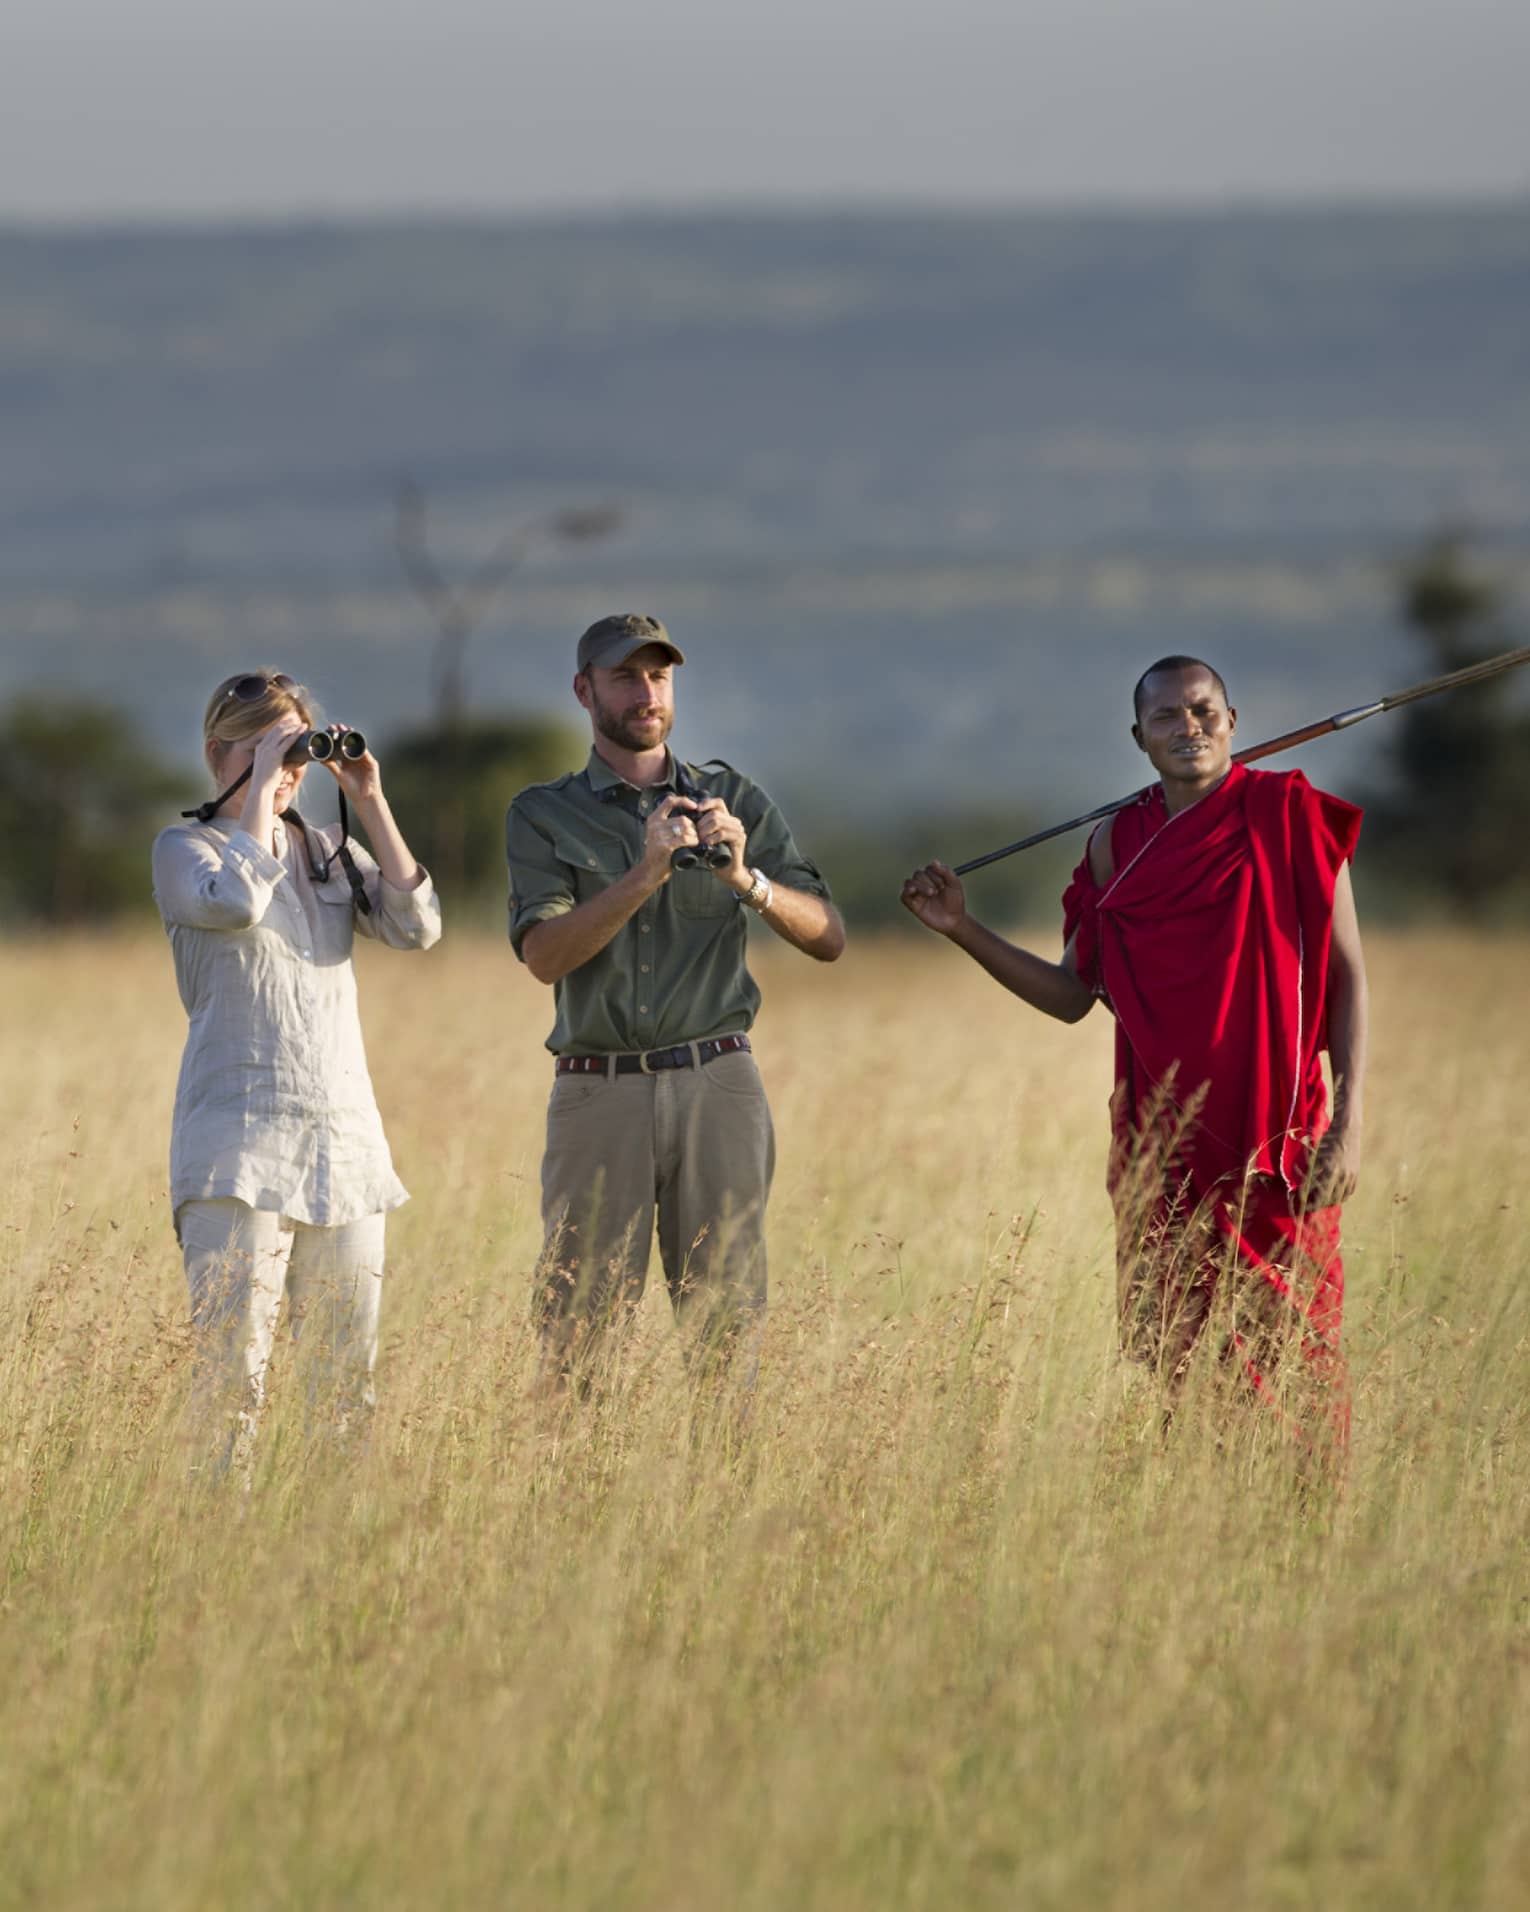 Couple takes photos on walking safari through tall grass with guides